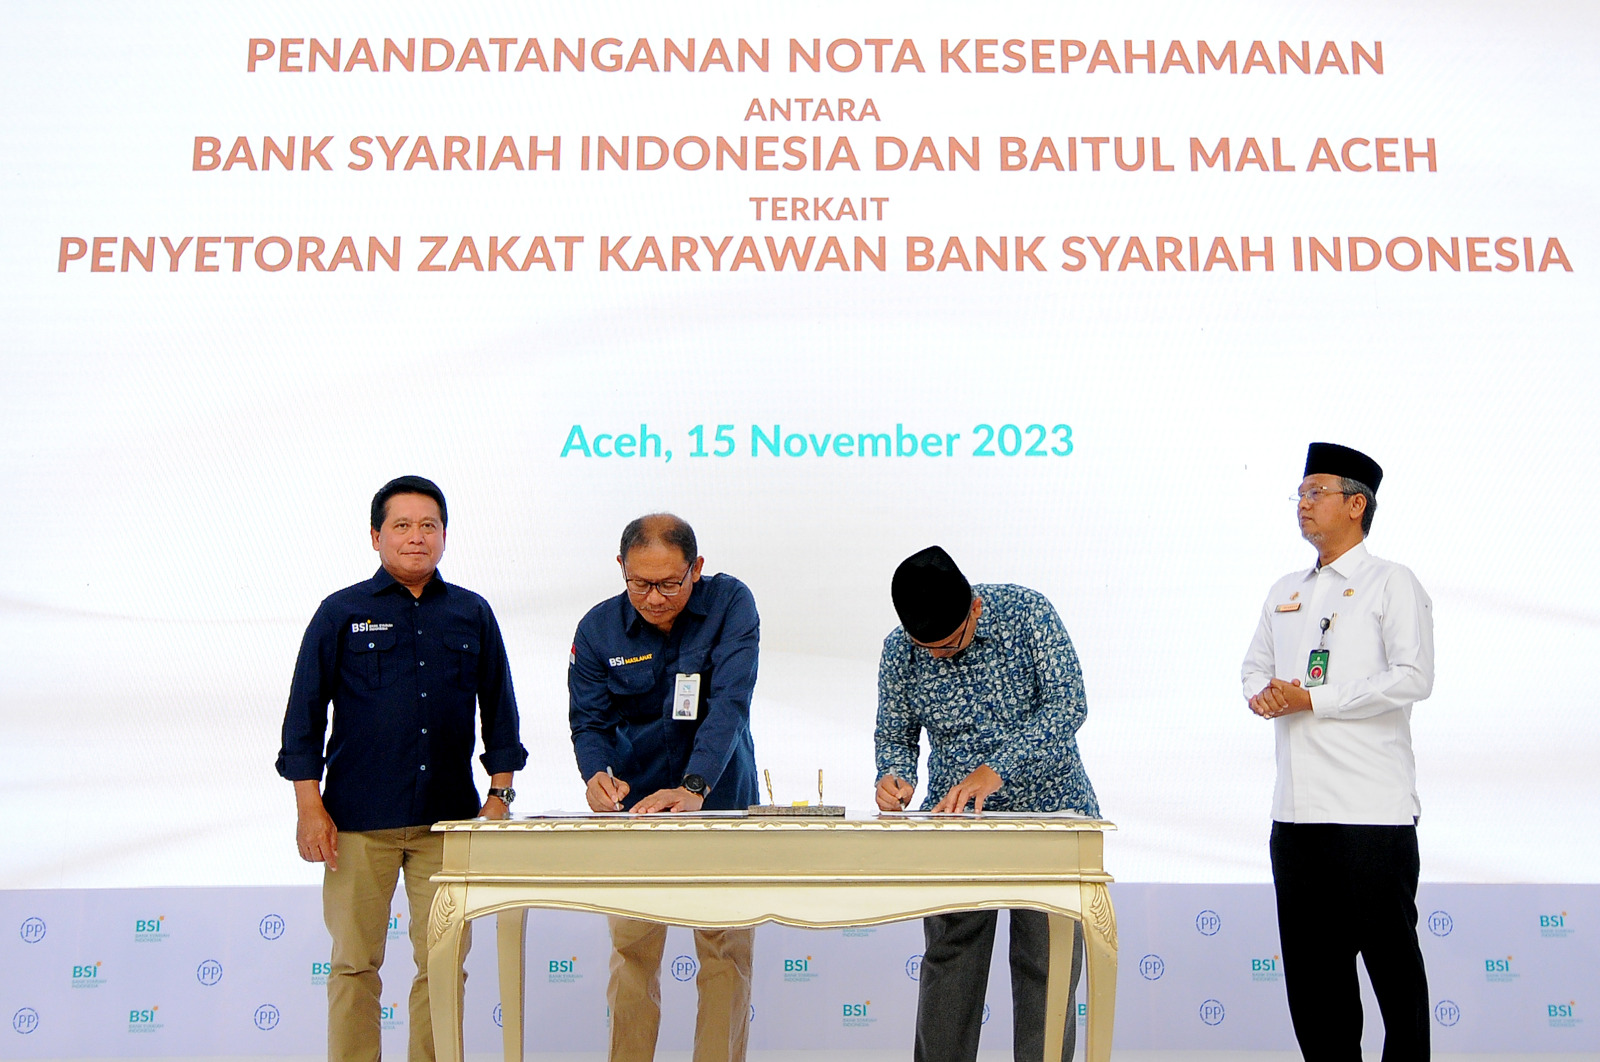 Direktur Utama BSI Hery Gunardi (kiri pertama) saat menyaksikan penandatanganan nota kesepahaman antara BSI Maslahat dengan Baitul Mal Aceh oleh Direktur Eksekutif BSI Maslahat Sukoriyanto Saputro (kiri kedua) dengan Ketua Badan Baitul Mal Aceh Mohammad Haikal (kanan kedua) yang disaksikan juga oleh Asisten 3 Provinsi Aceh Iskandar (kanan pertama), di acara Topping Off Green Building BSI Aceh, Banda Aceh (15/11).